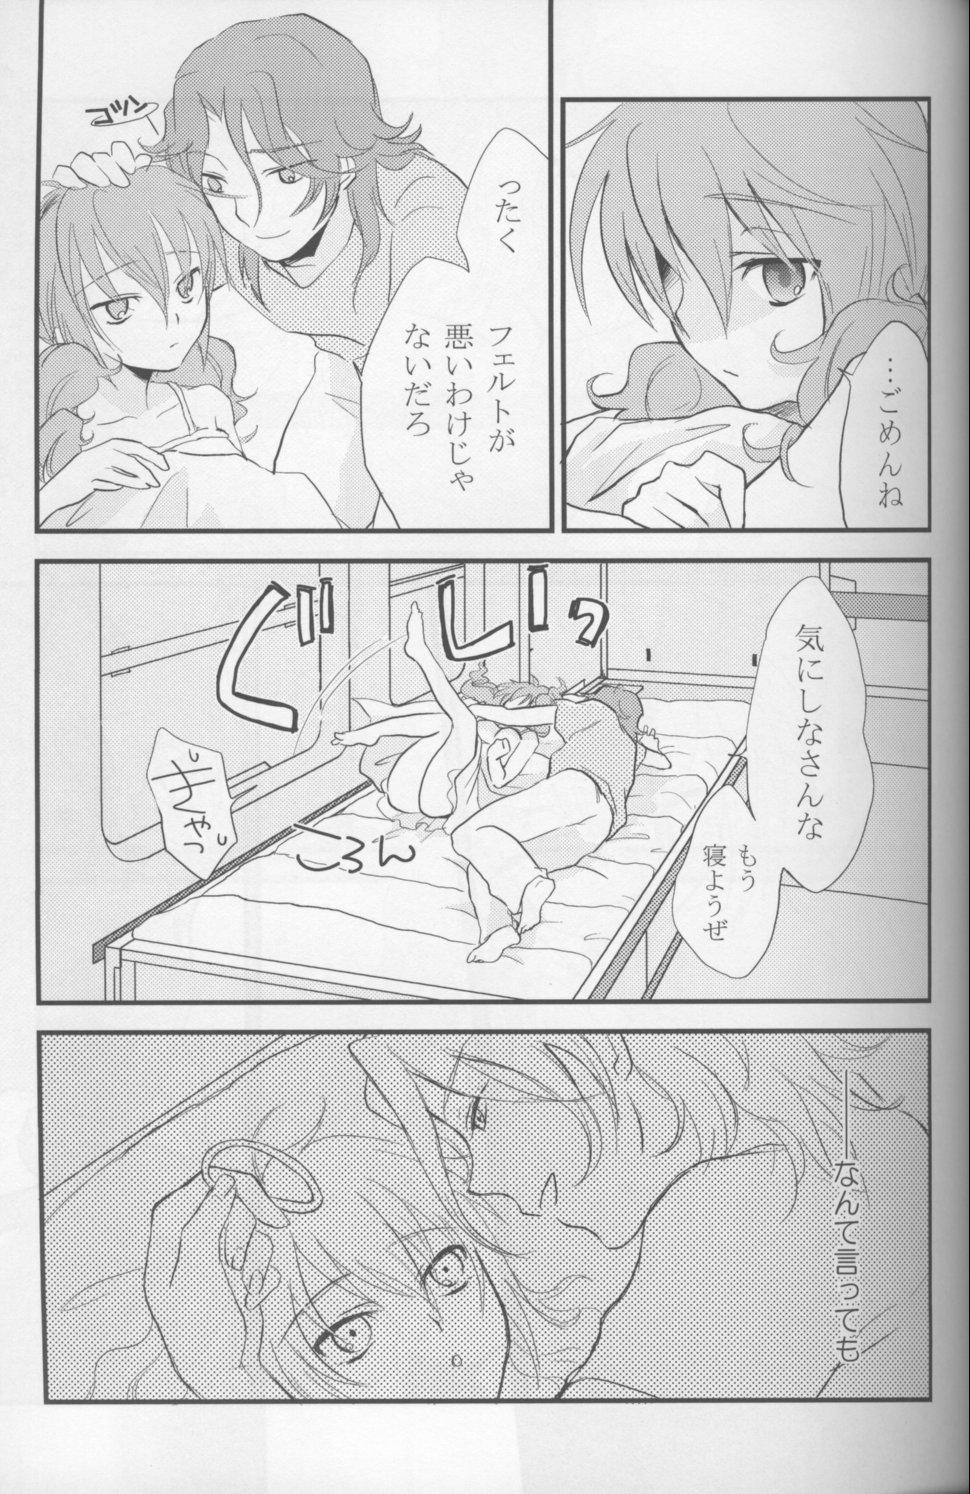 Machine Touch Me - Gundam 00 Massage - Page 6